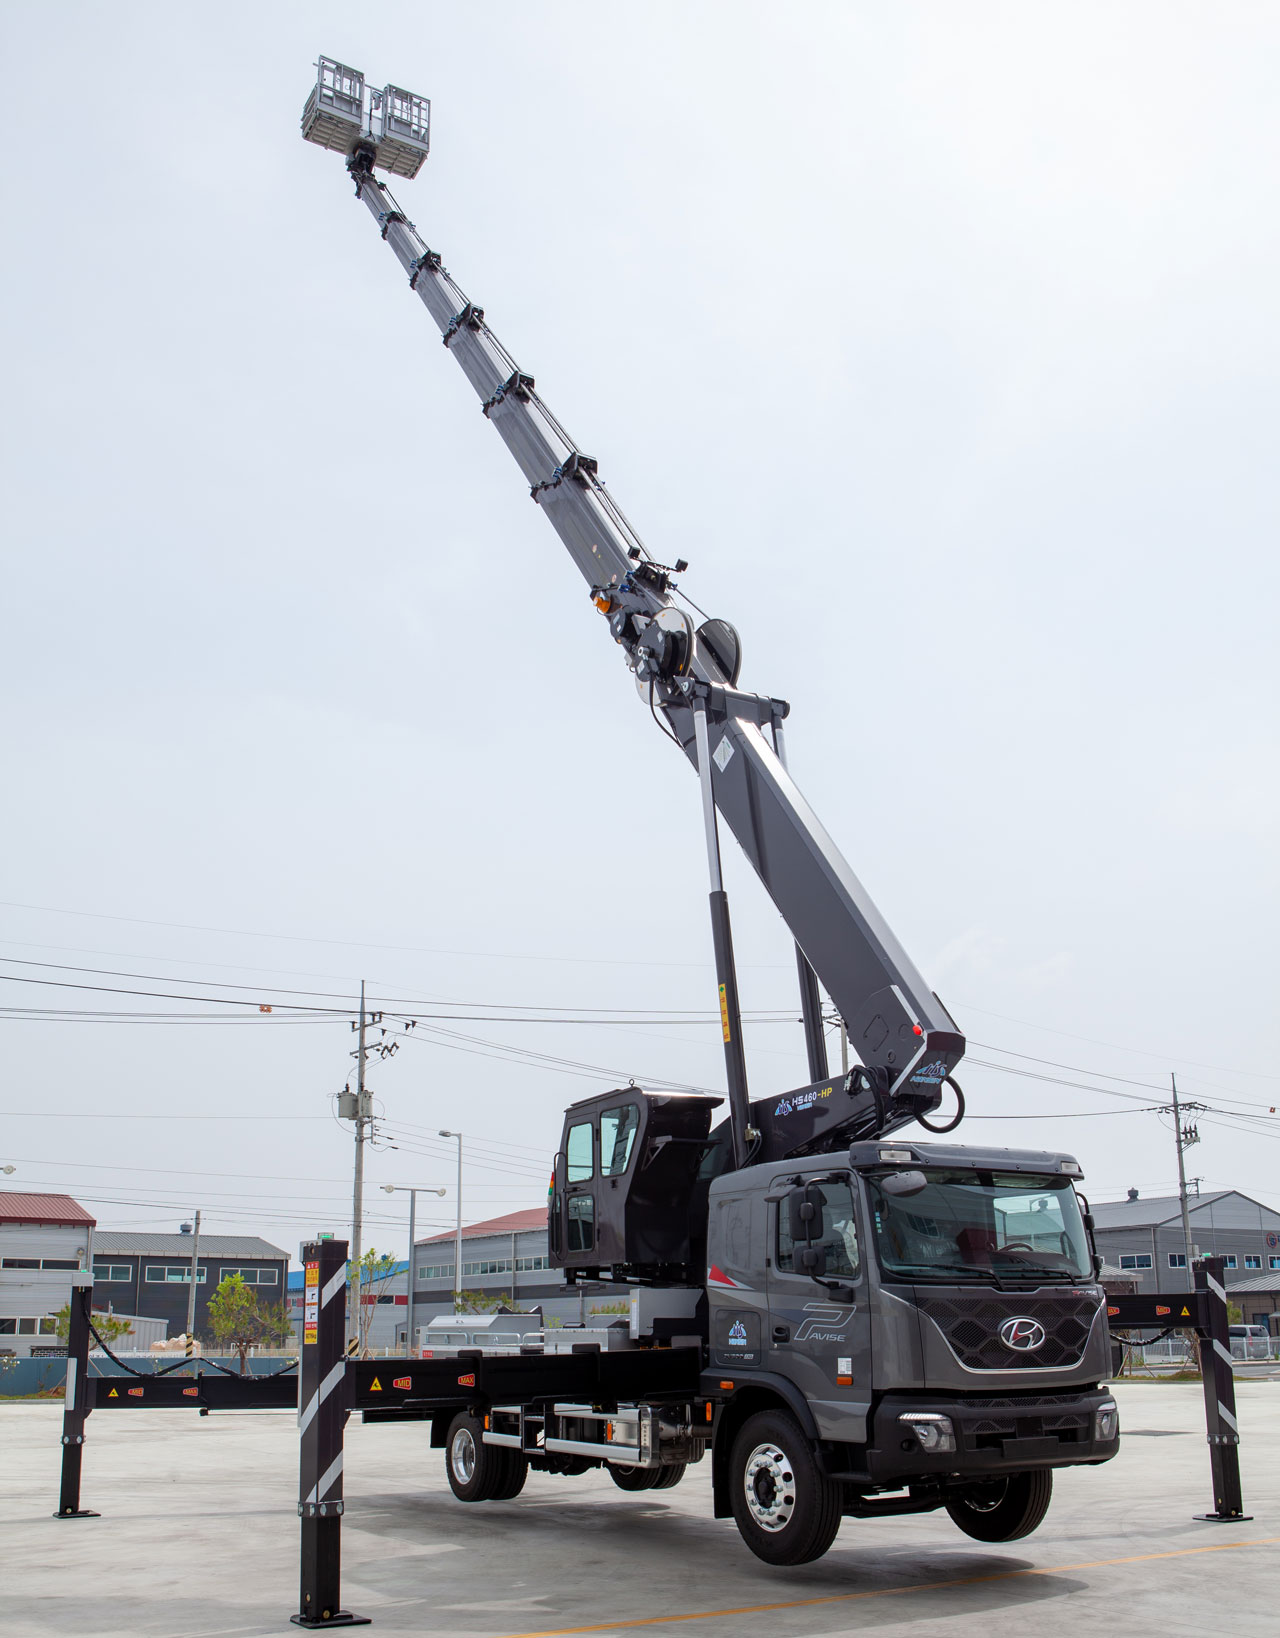 La pluma muy larga de una plataforma aérea montada en camión fabricada con el acero estructural Strenx® elevándose en el cielo.